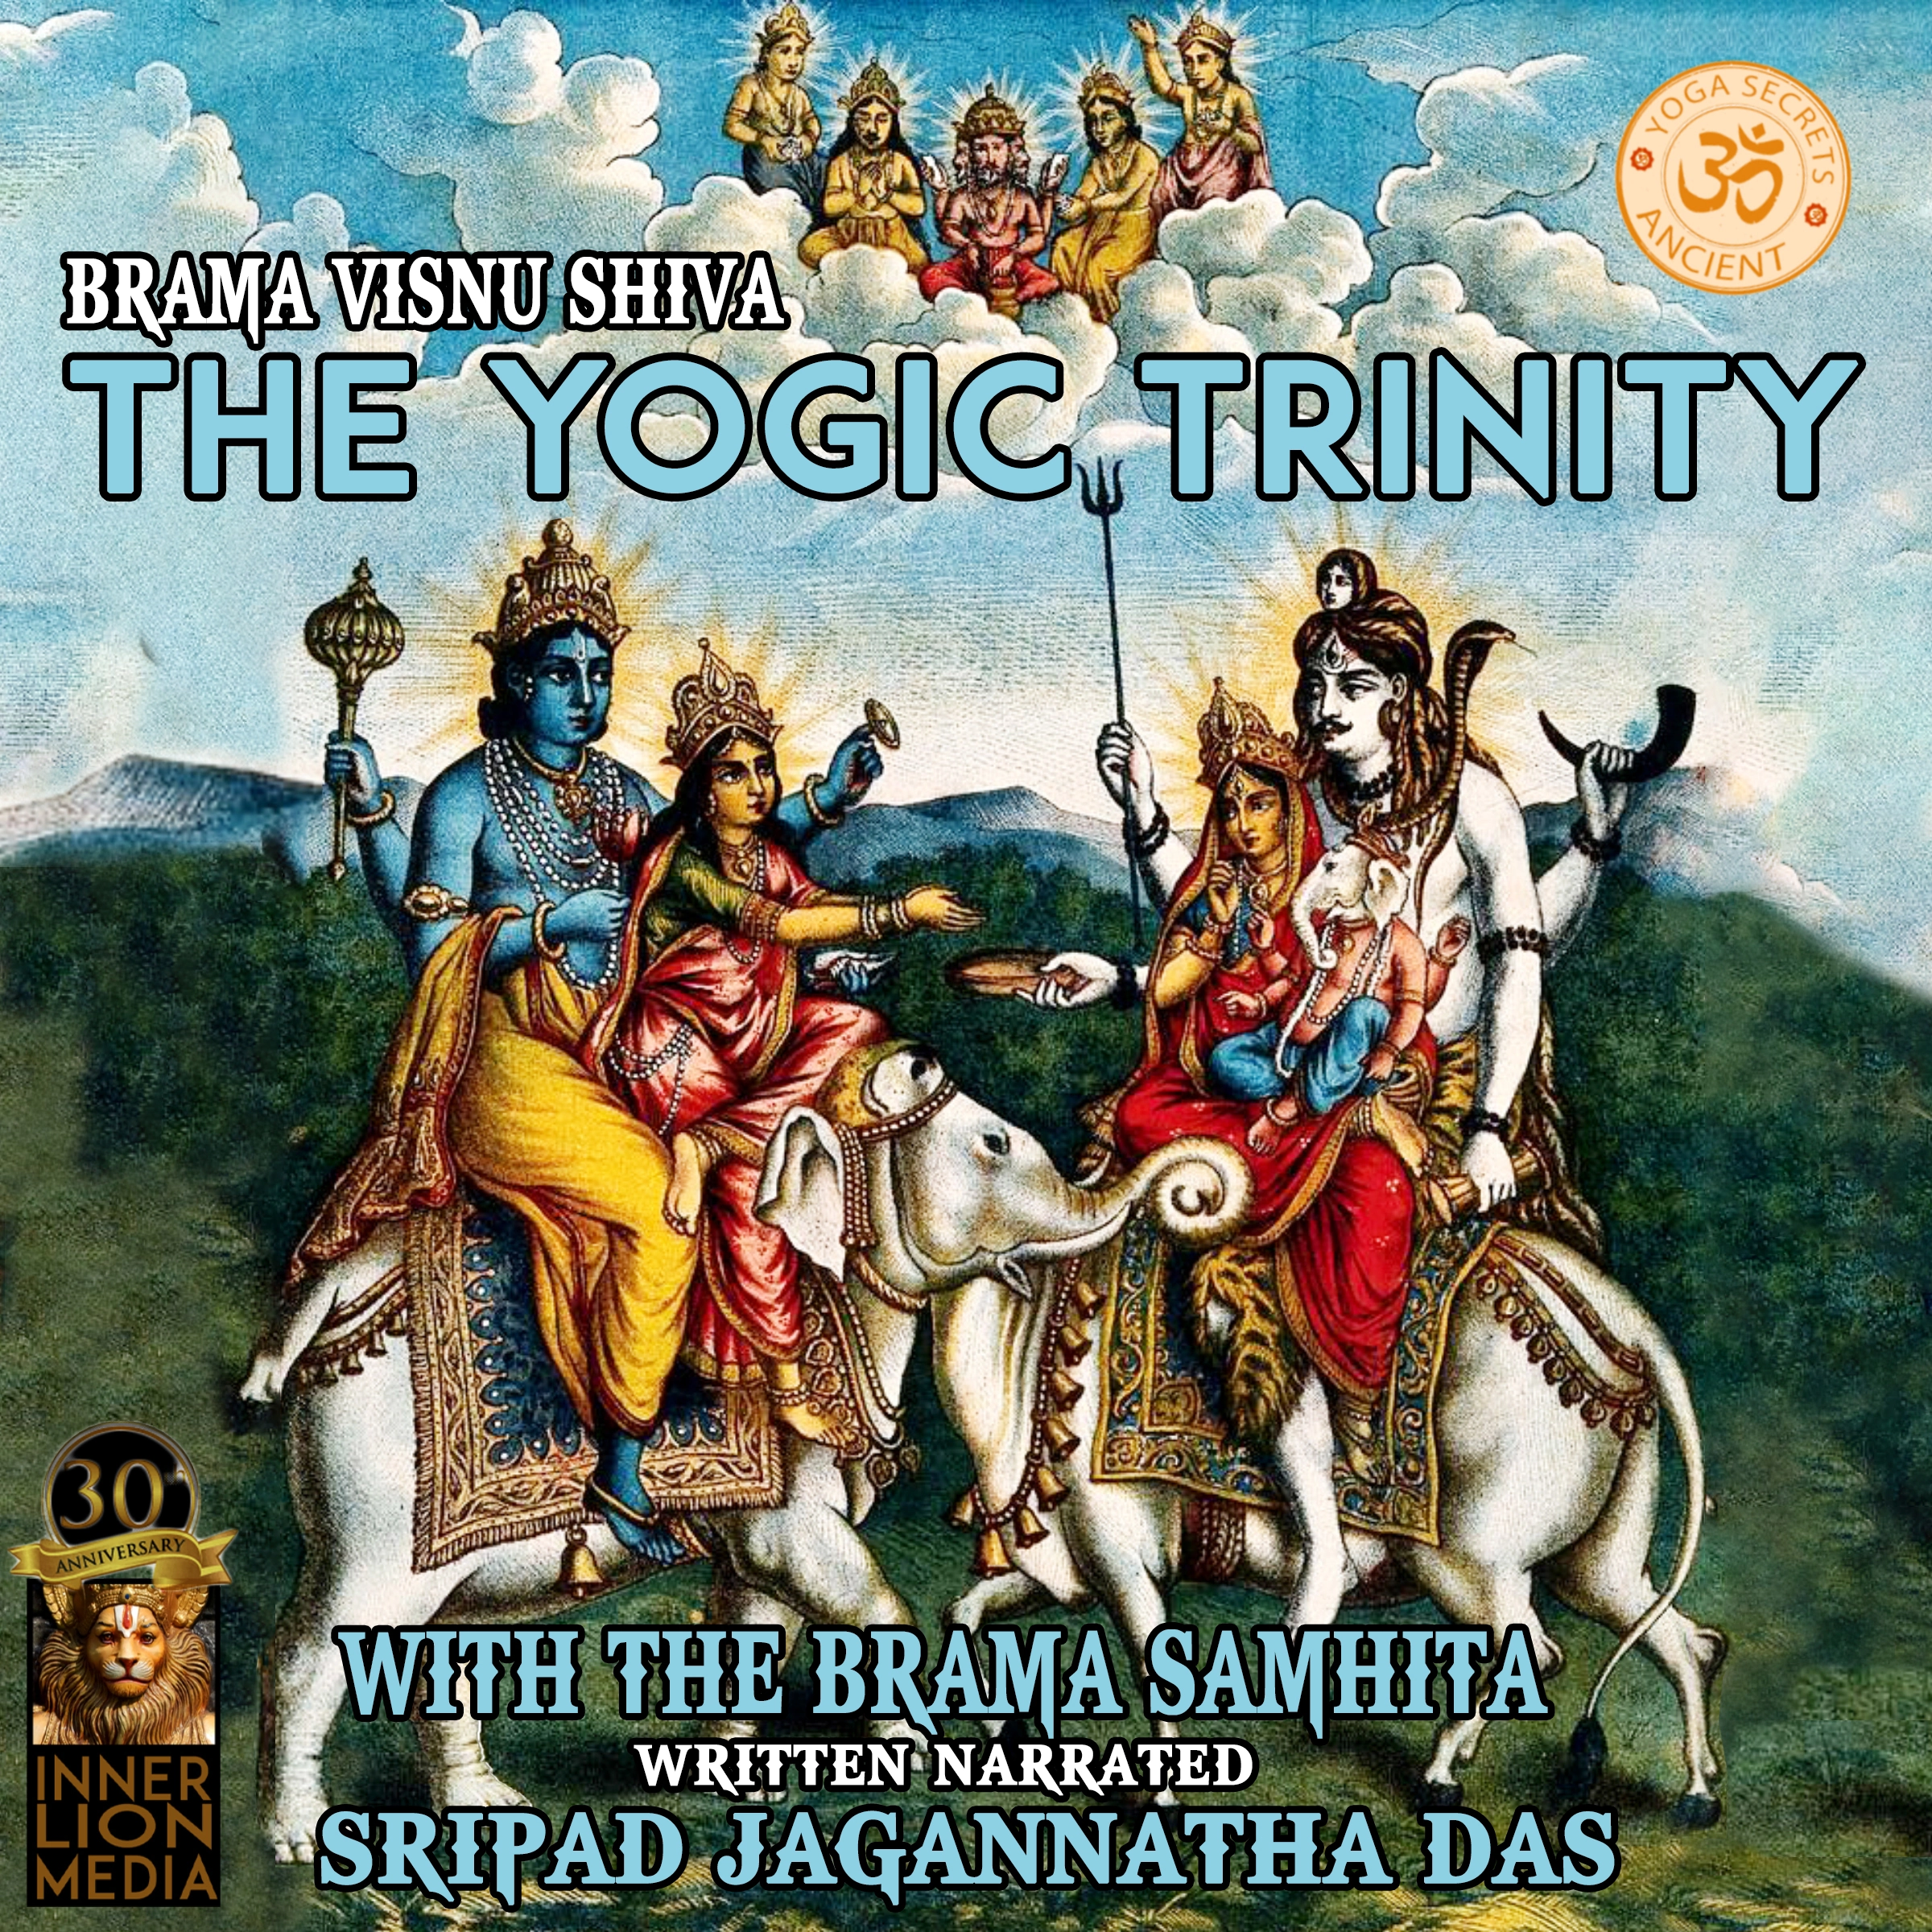 Brahma Vishnu Shiva Audiobook by Sripad Jagannatha Das